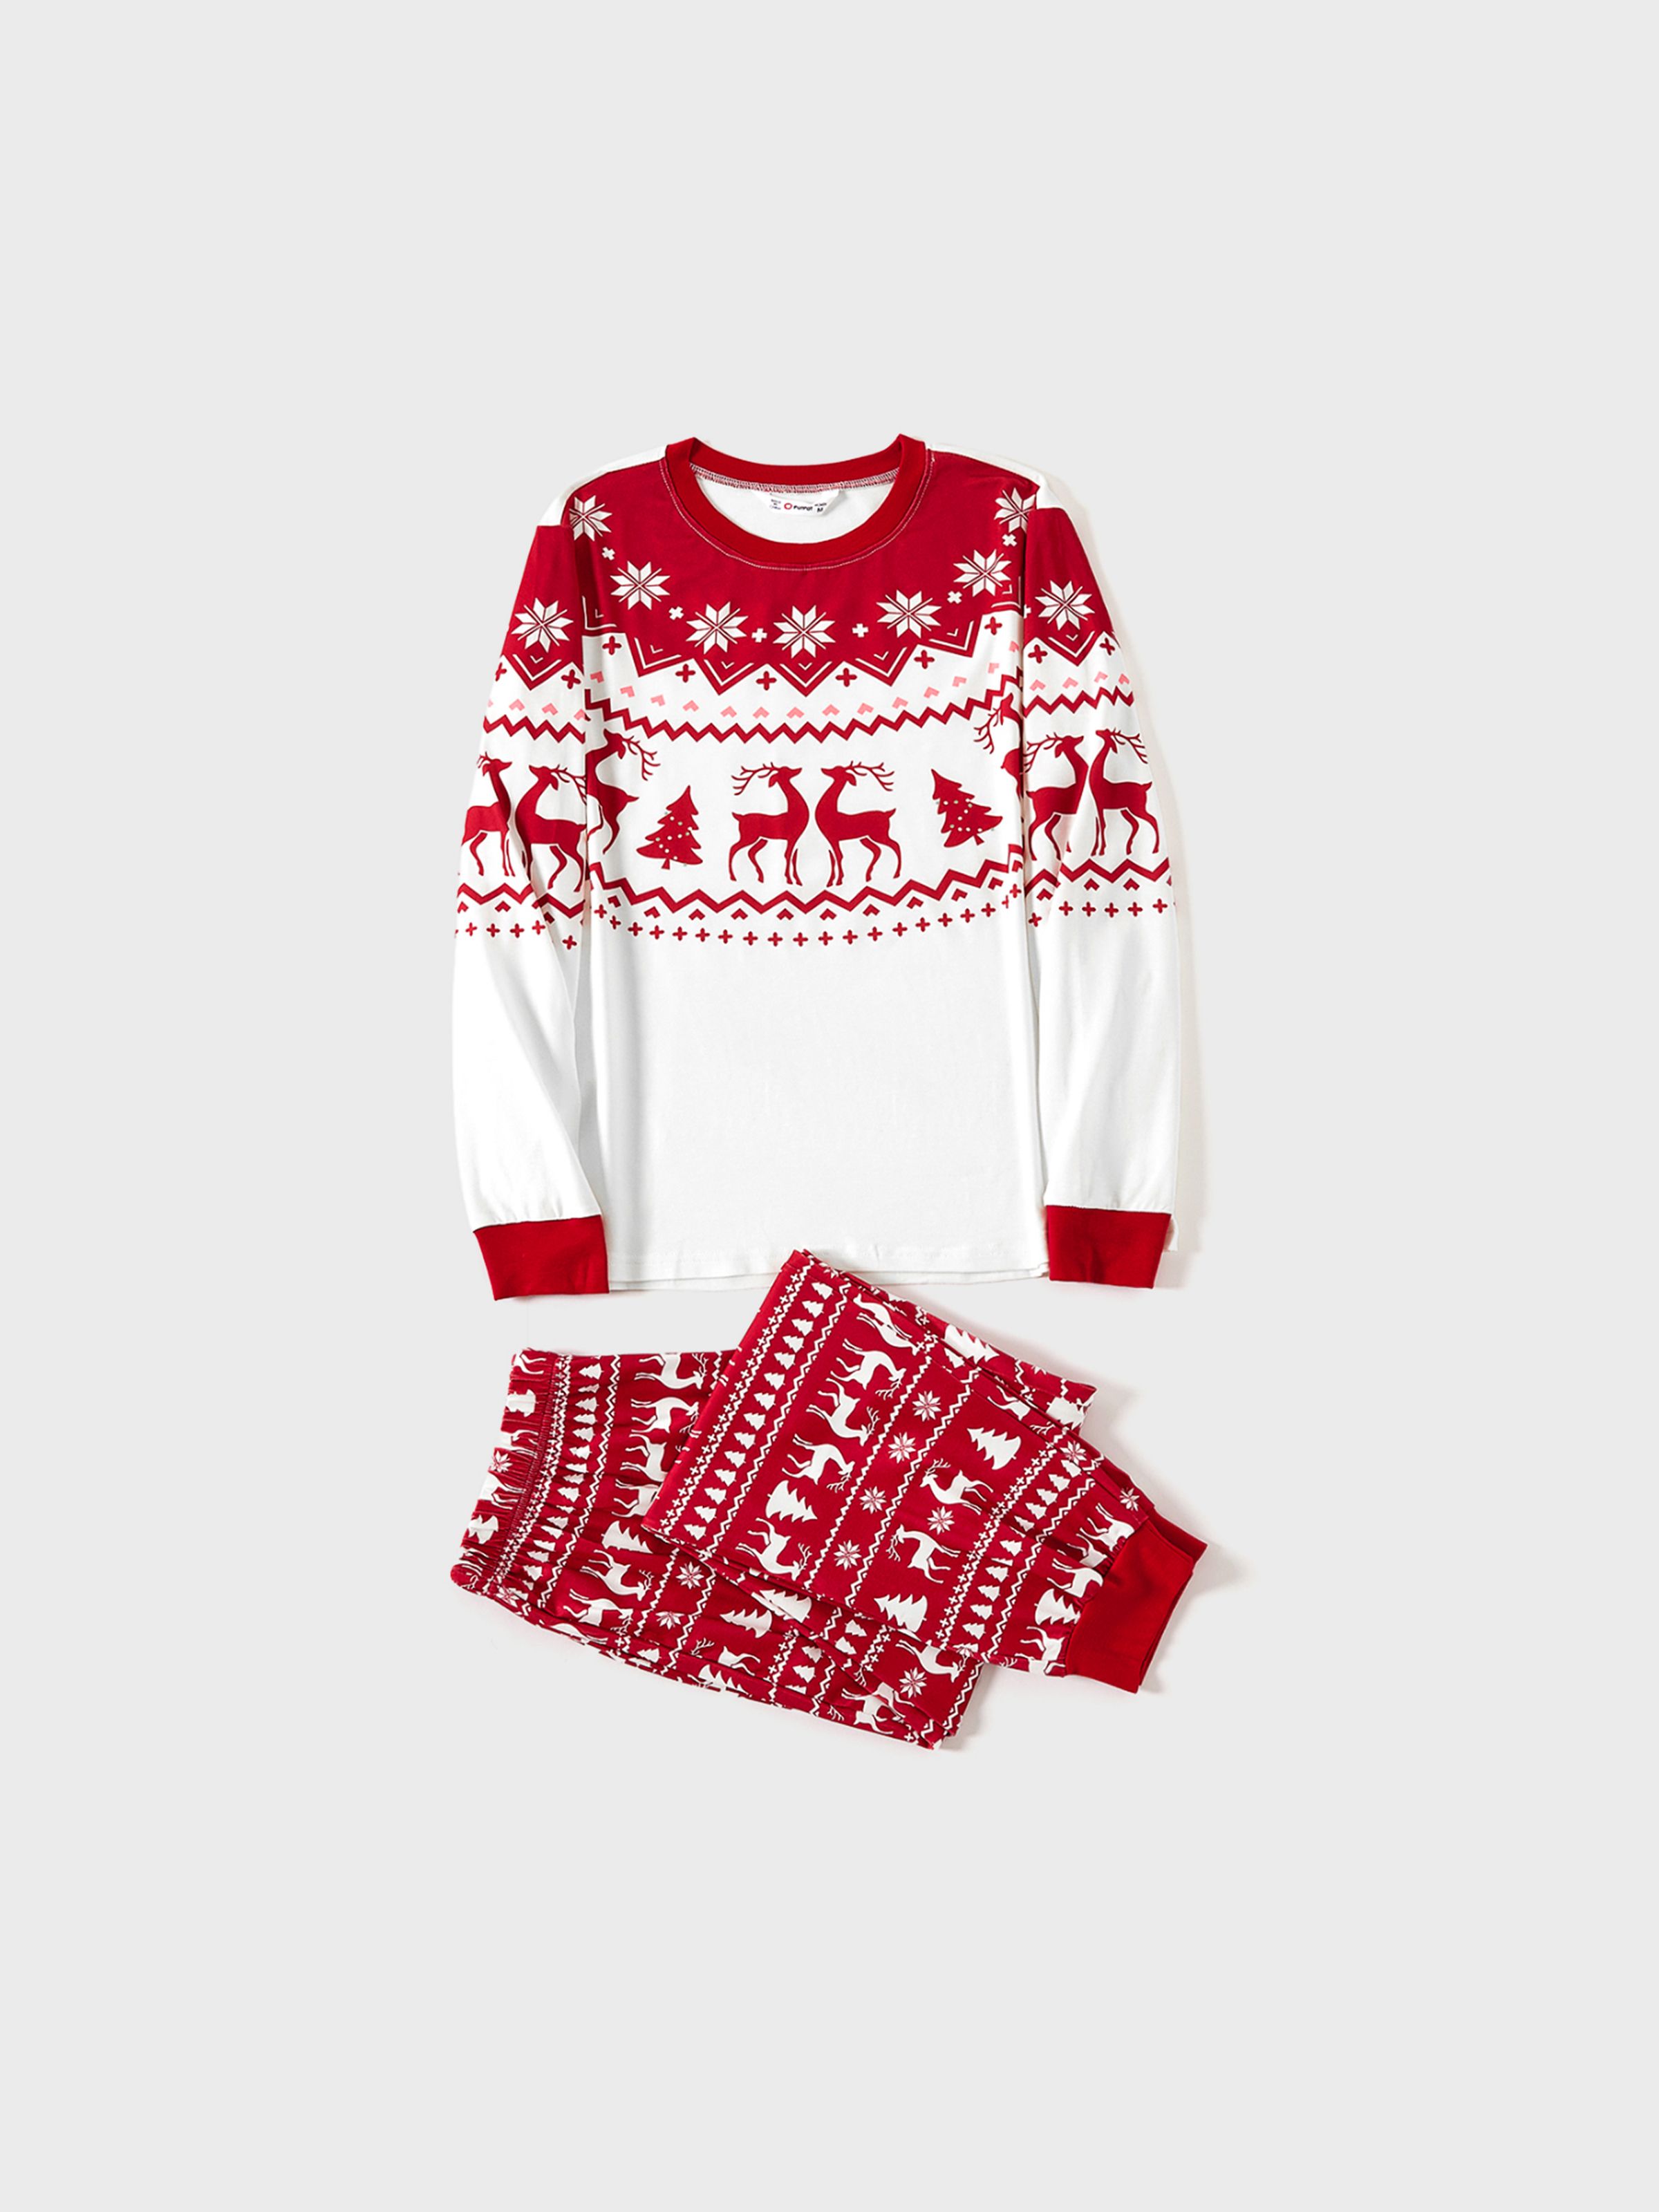 

Christmas Reindeer and Snowflake Print Family Matching Pajamas Sets (Flame Resistant)